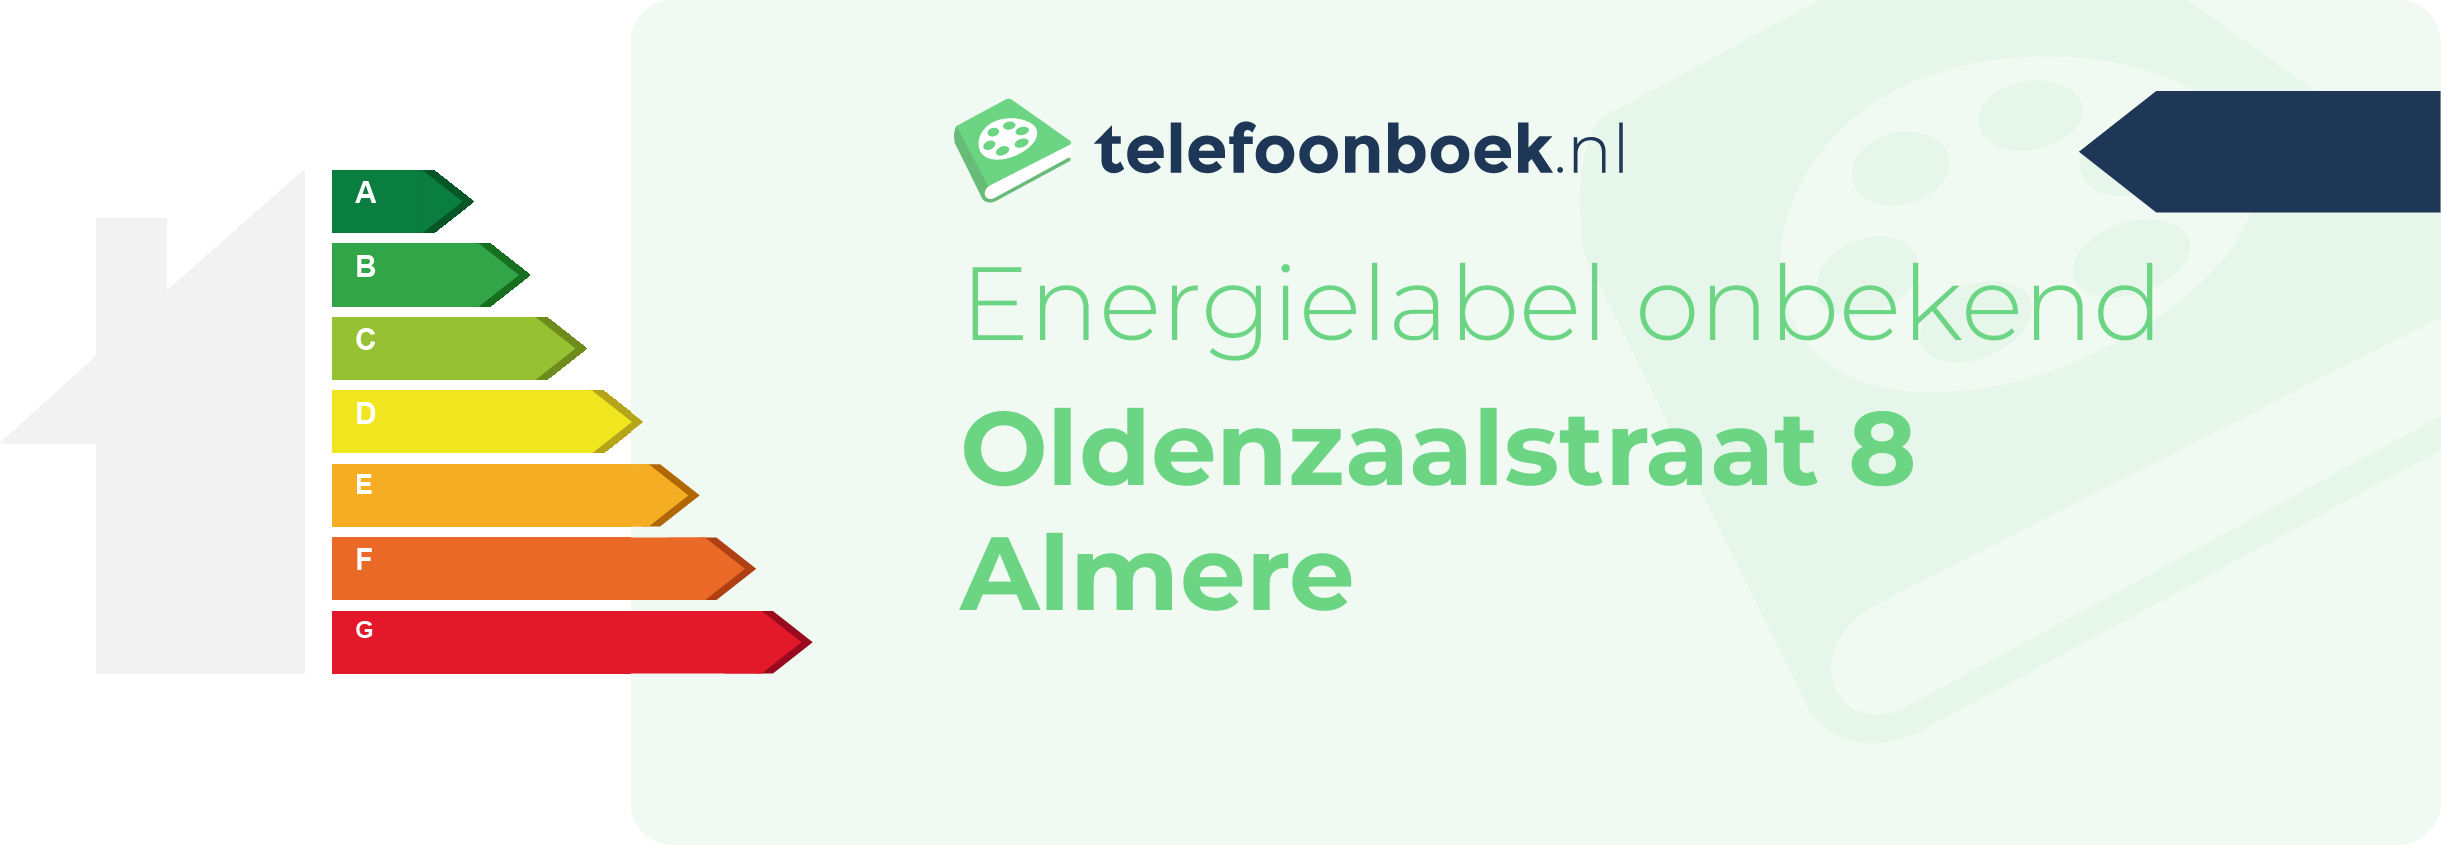 Energielabel Oldenzaalstraat 8 Almere